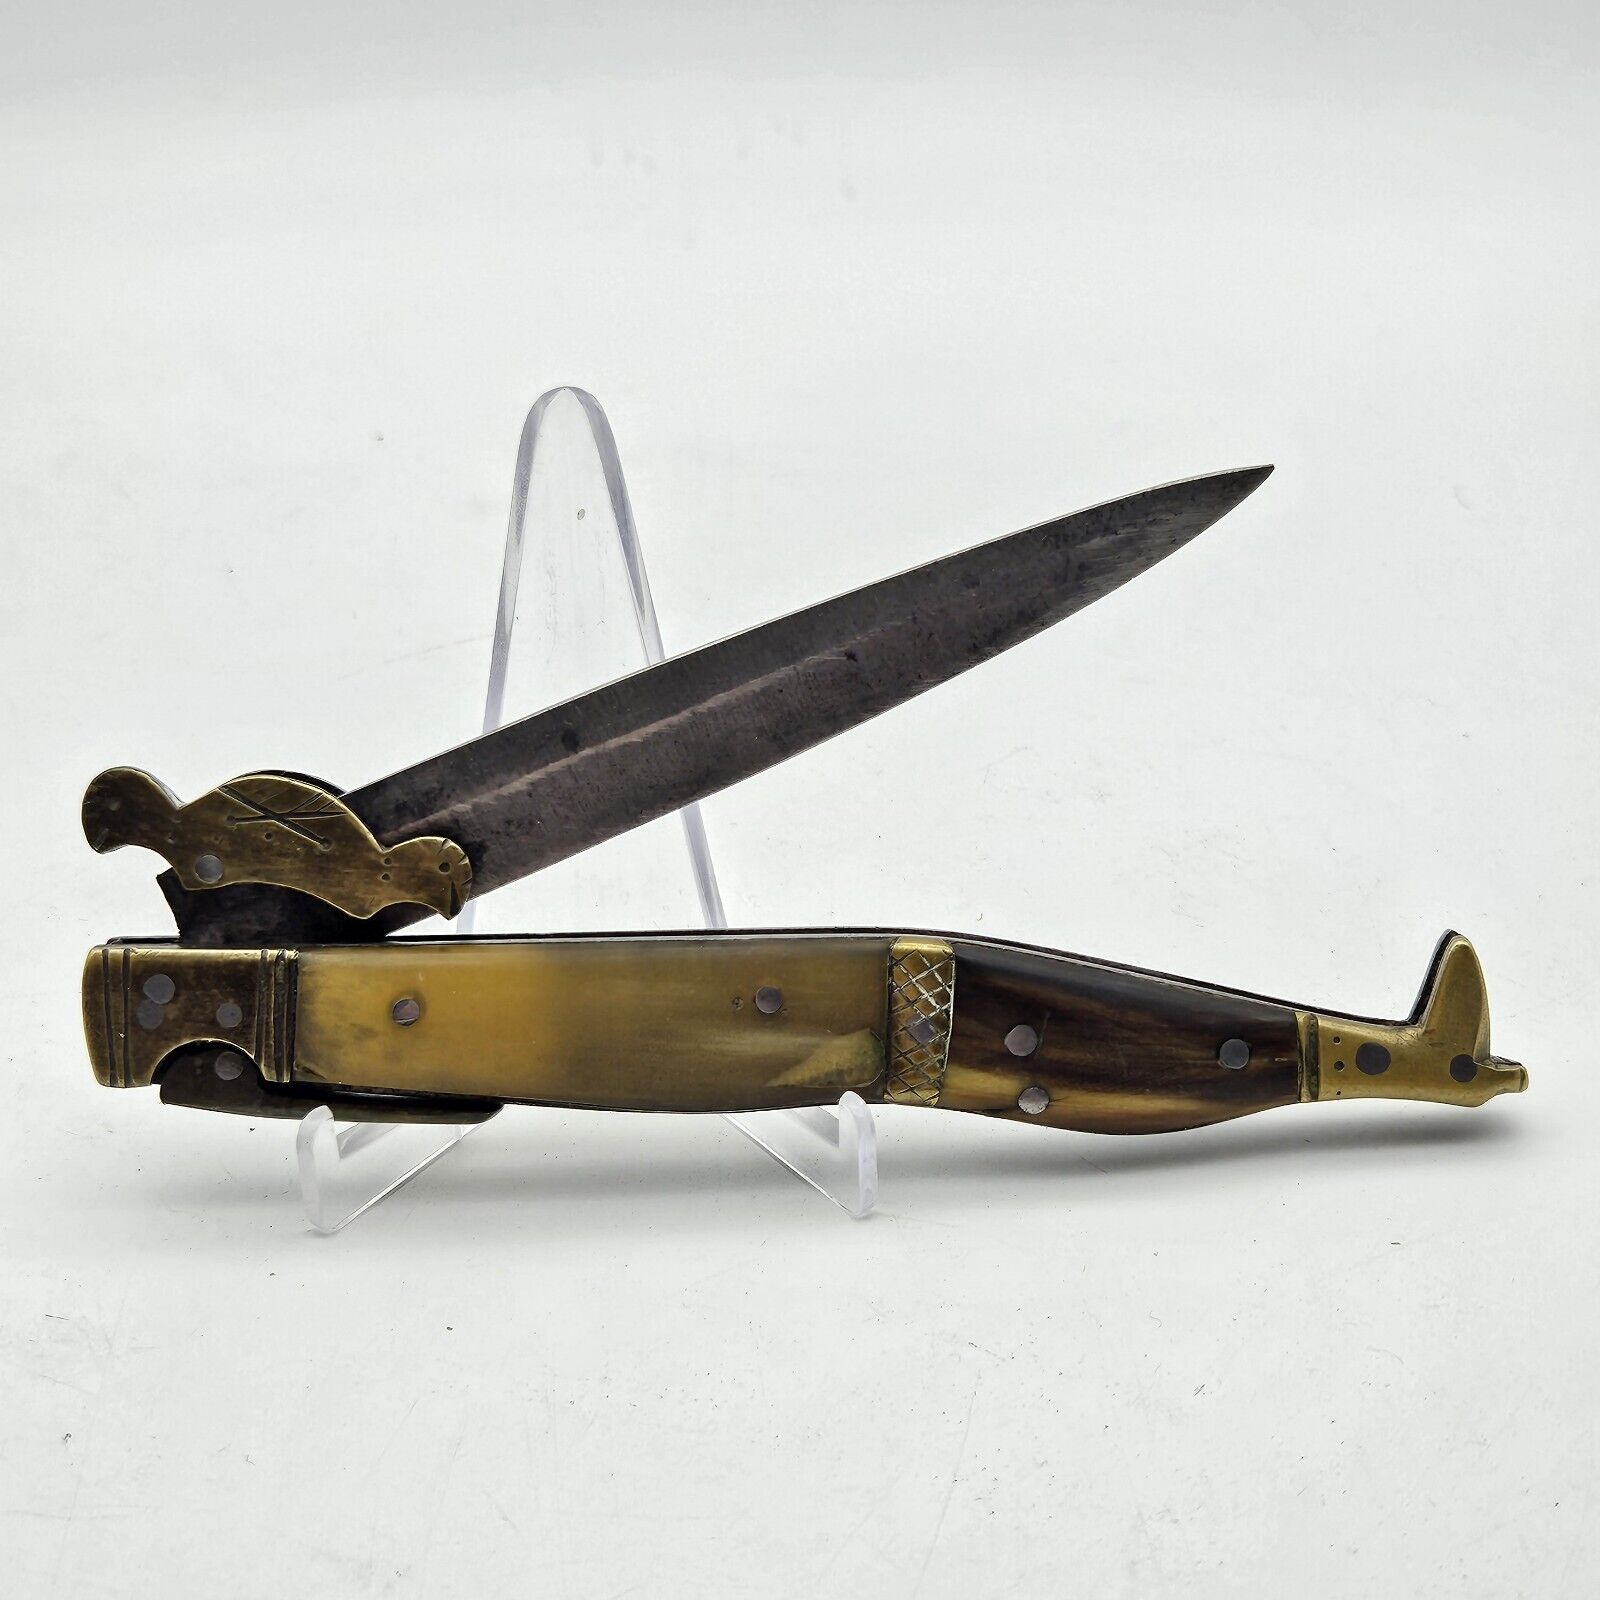 Antique Vintage Boot-shaped Pocket Knife, Horn Handle. Unusual